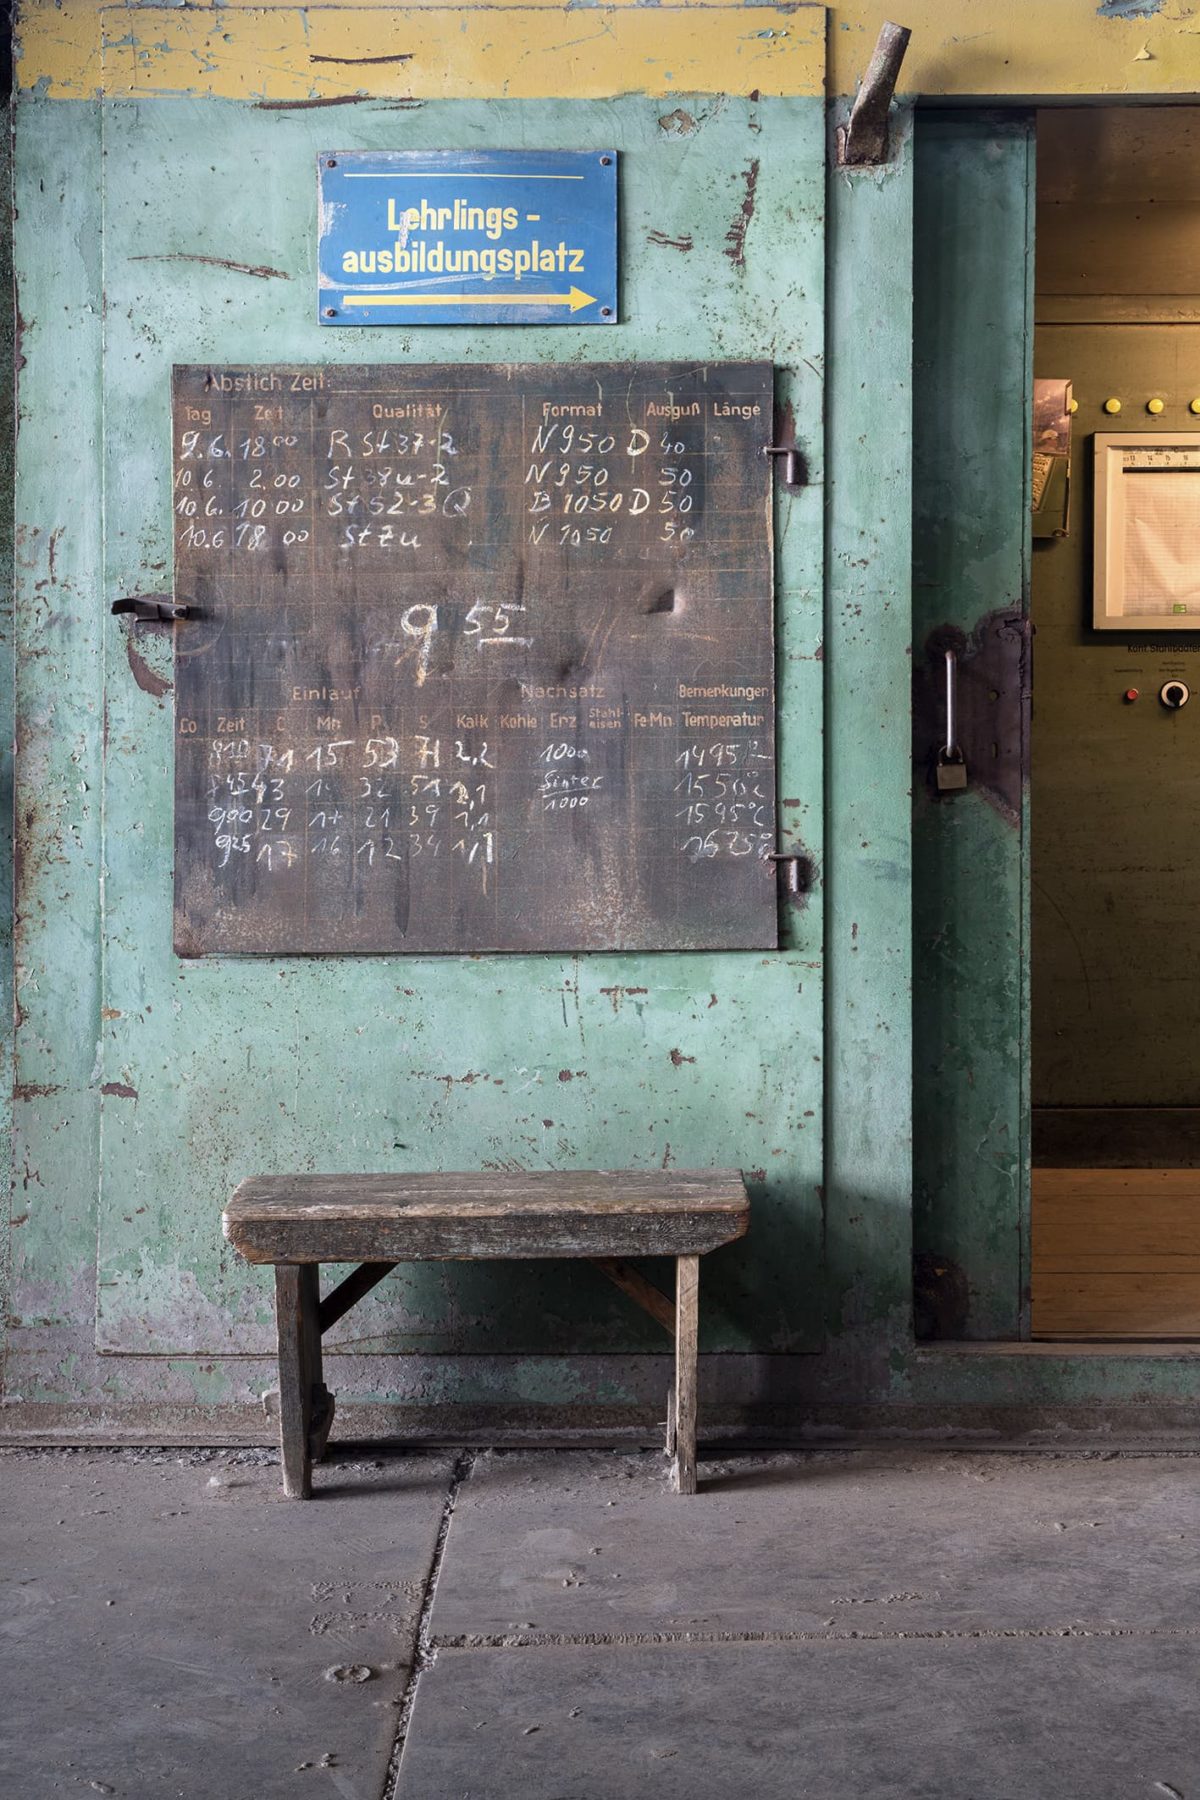 Tafel mit Terminen zur Lehrlingsausbildung an einer grünen Wand, davor eine kleine Holzbank